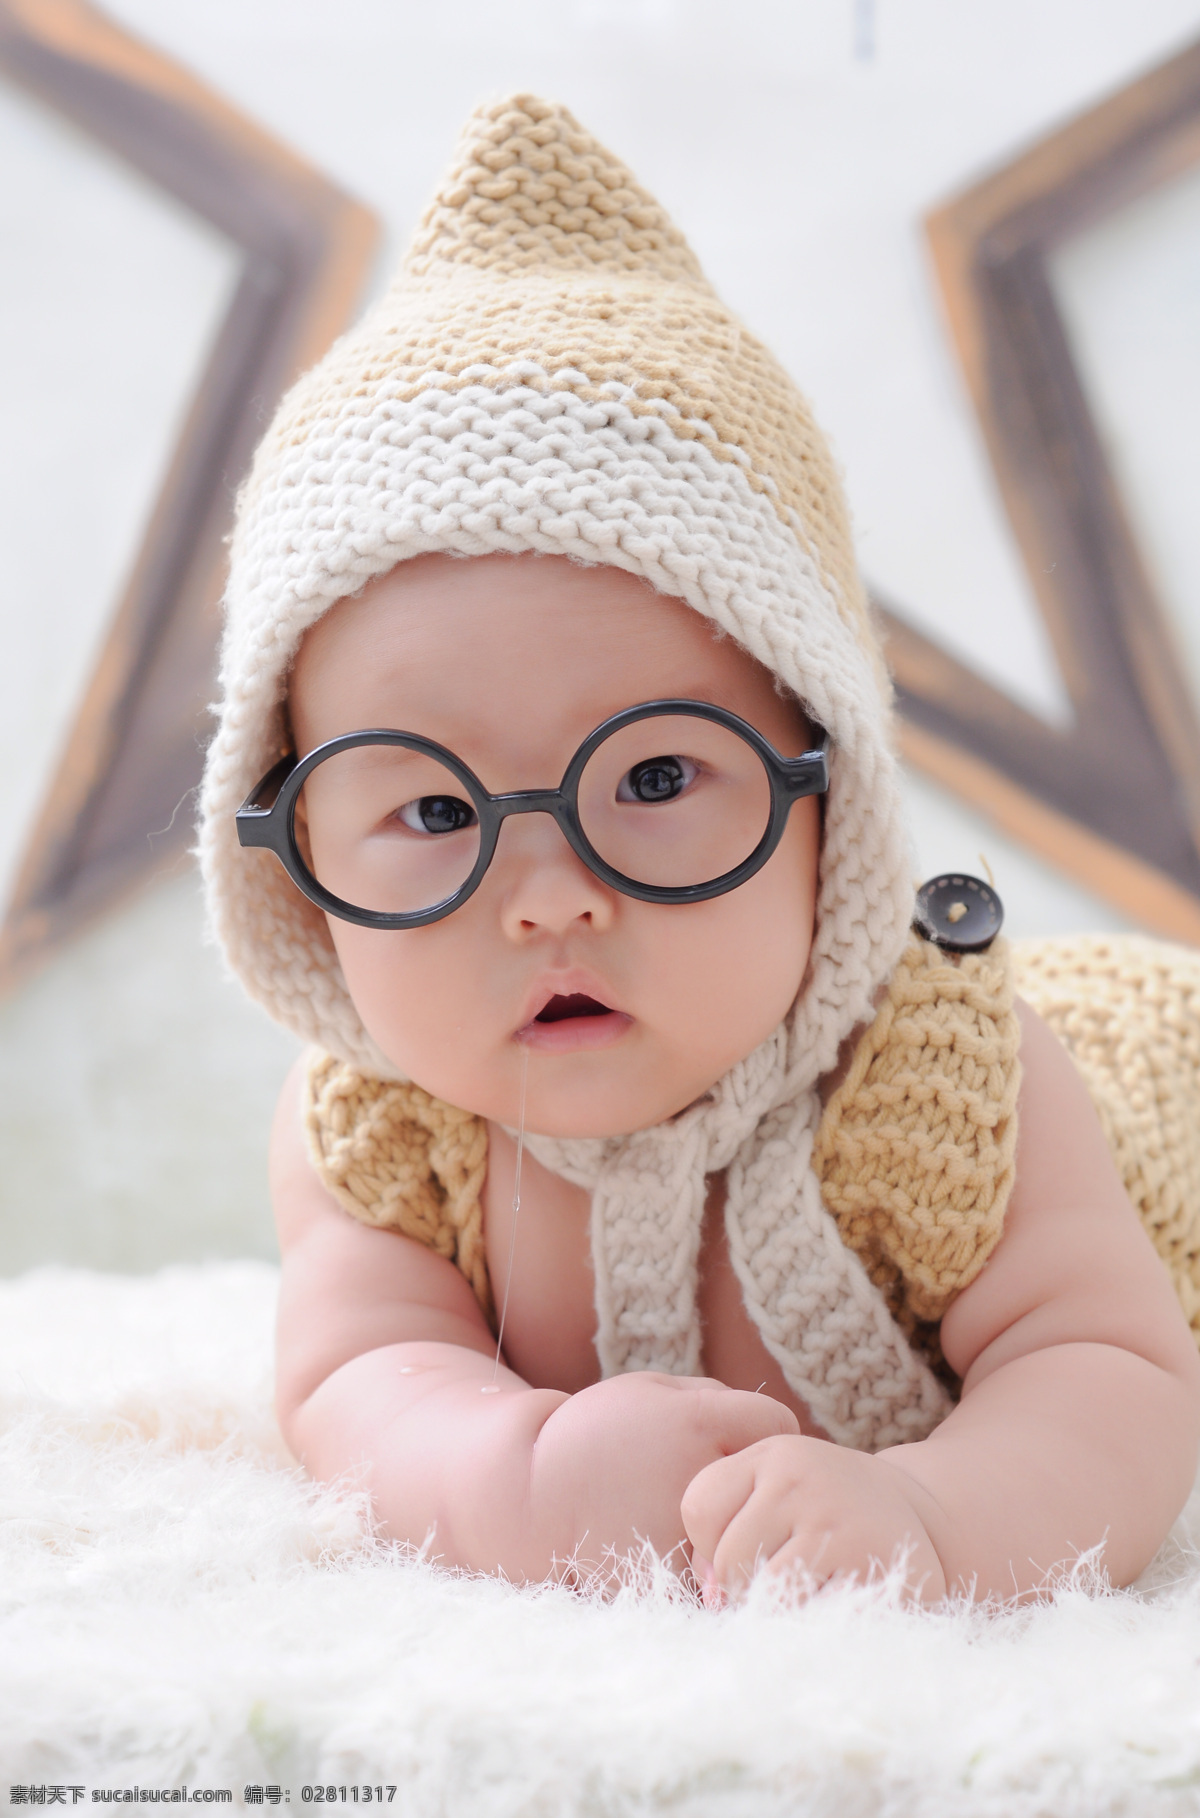 圆眼镜婴儿 博士 婴儿 儿童幼儿 人物图库 日常生活 麒星